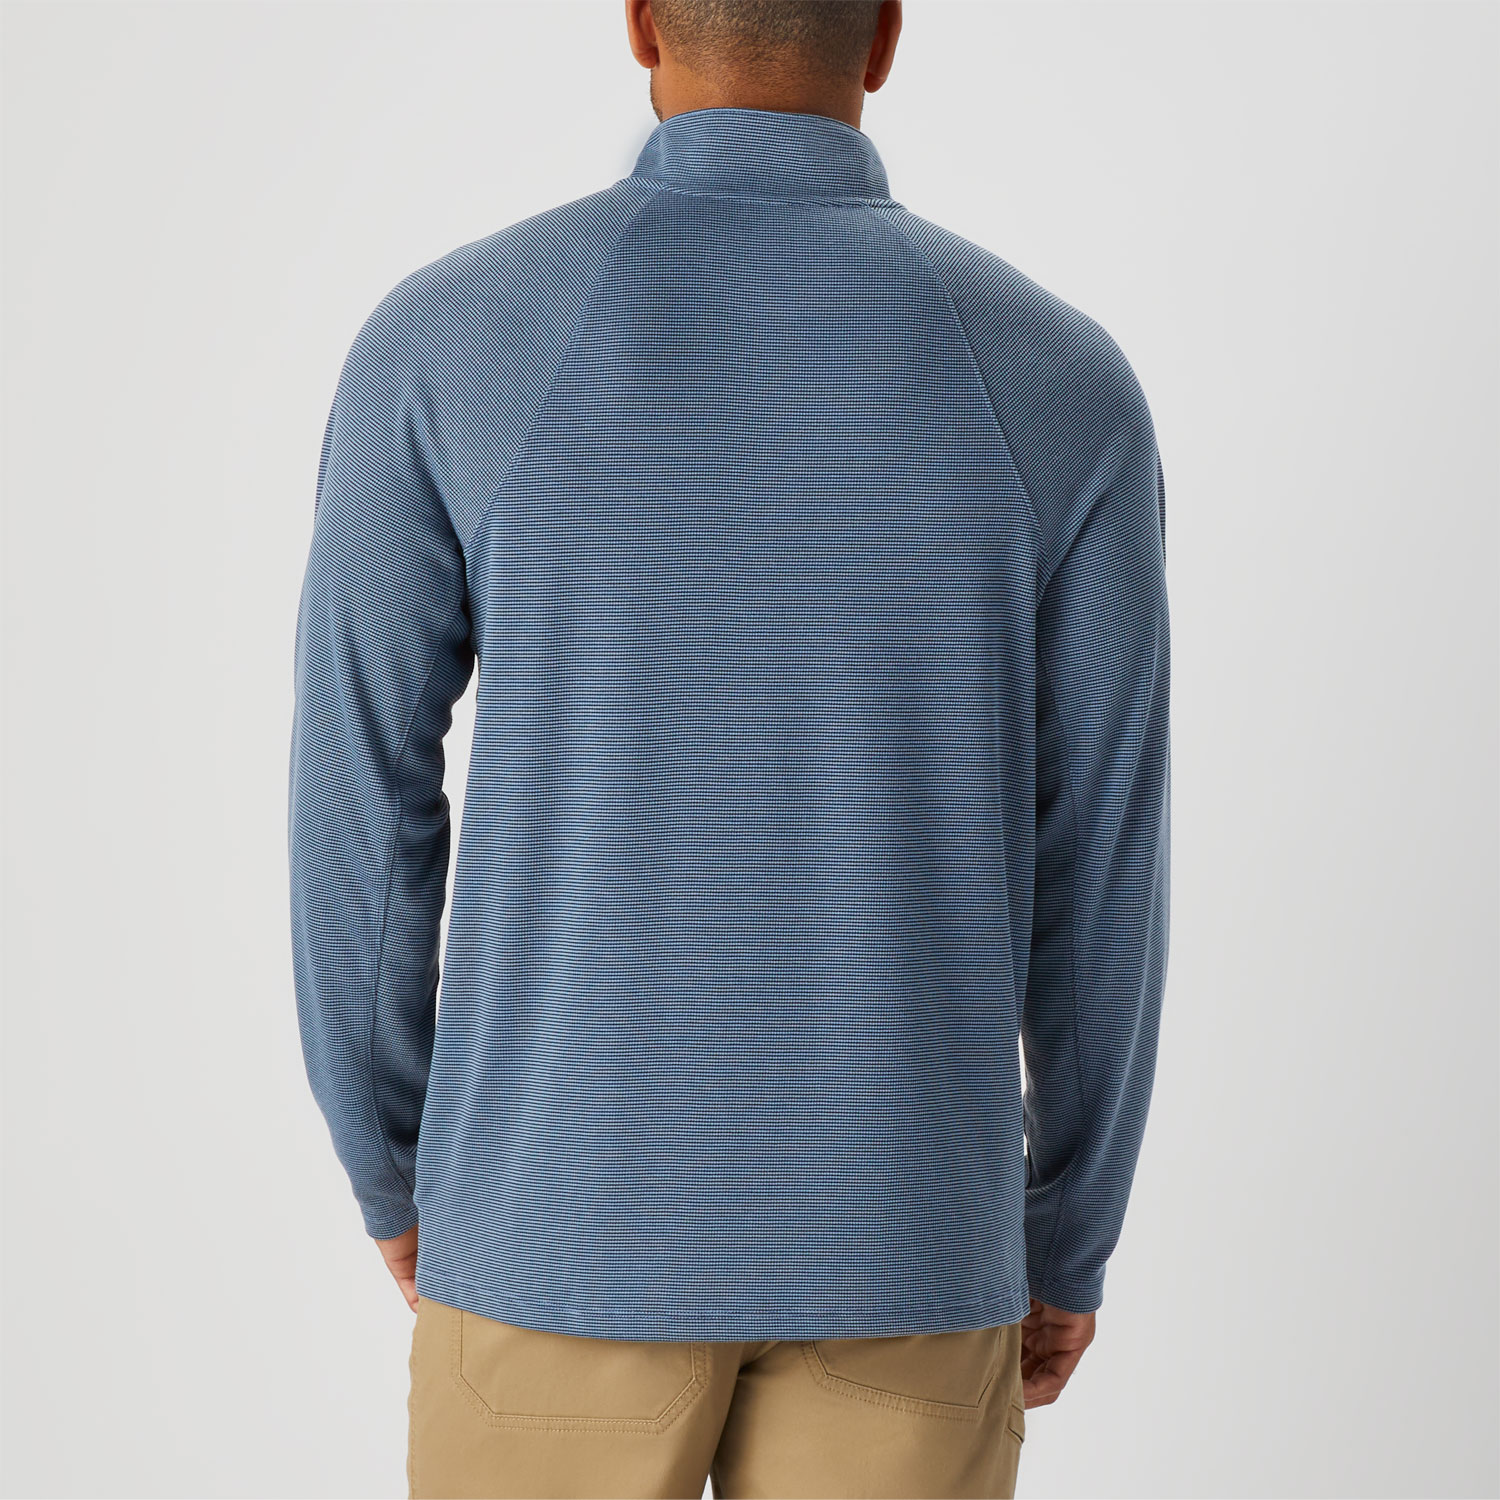 Men's Knuckledown 1/4 Zip Long Sleeve Pullover